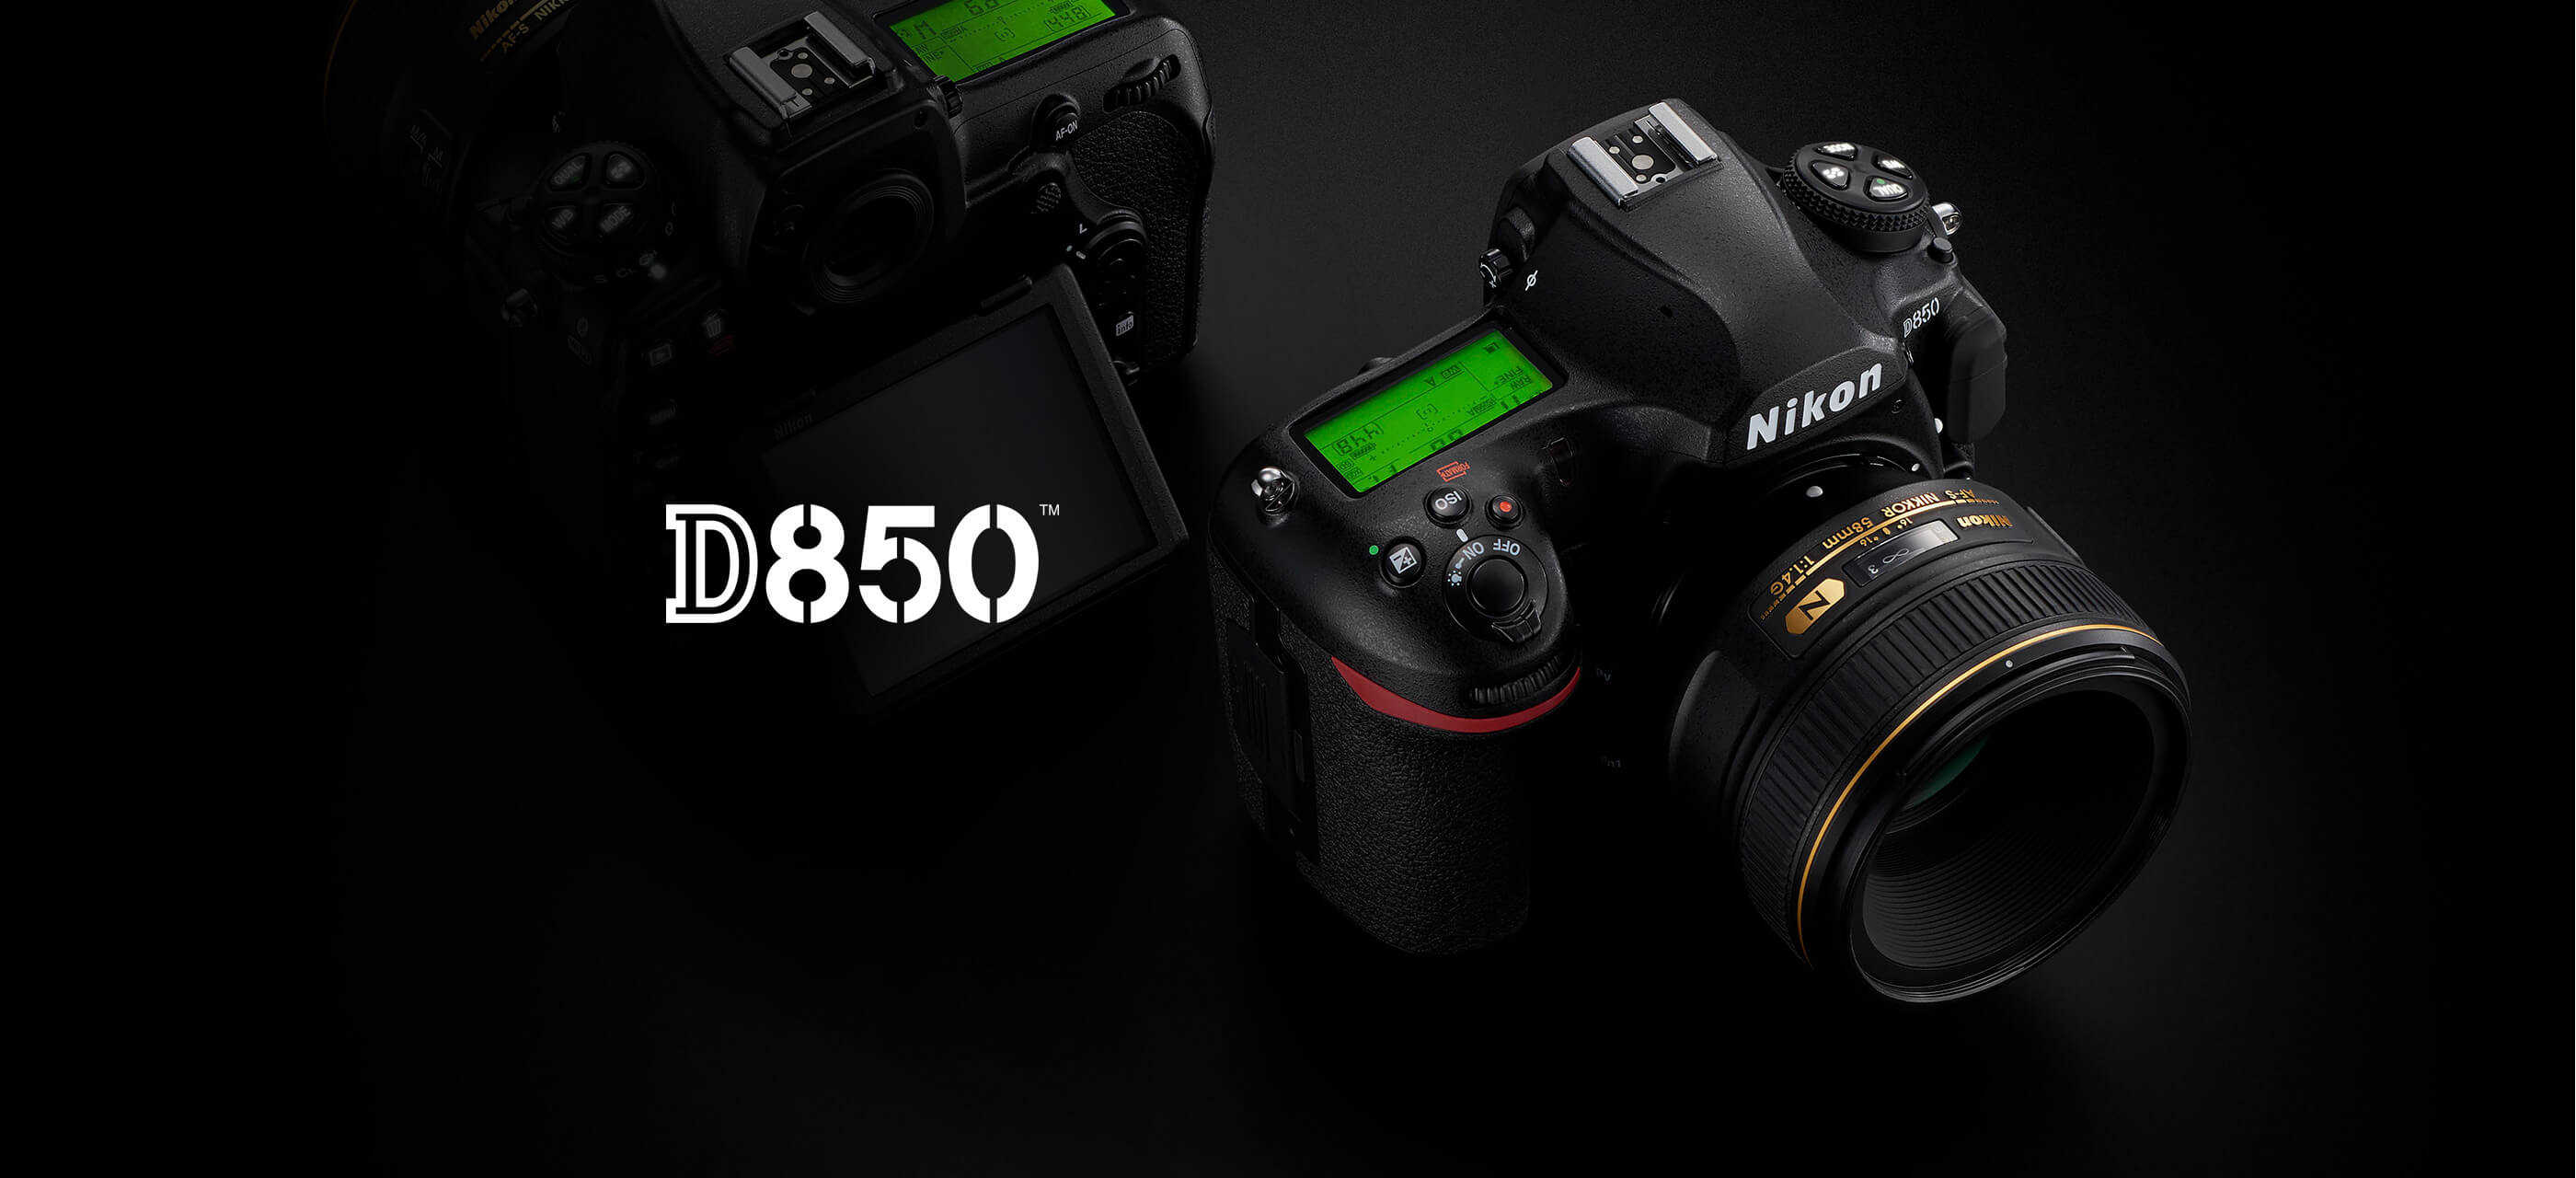 Vertical l-en forma rápidamente discos extraíbles soporte para Nikon d850 SLR-cámara 